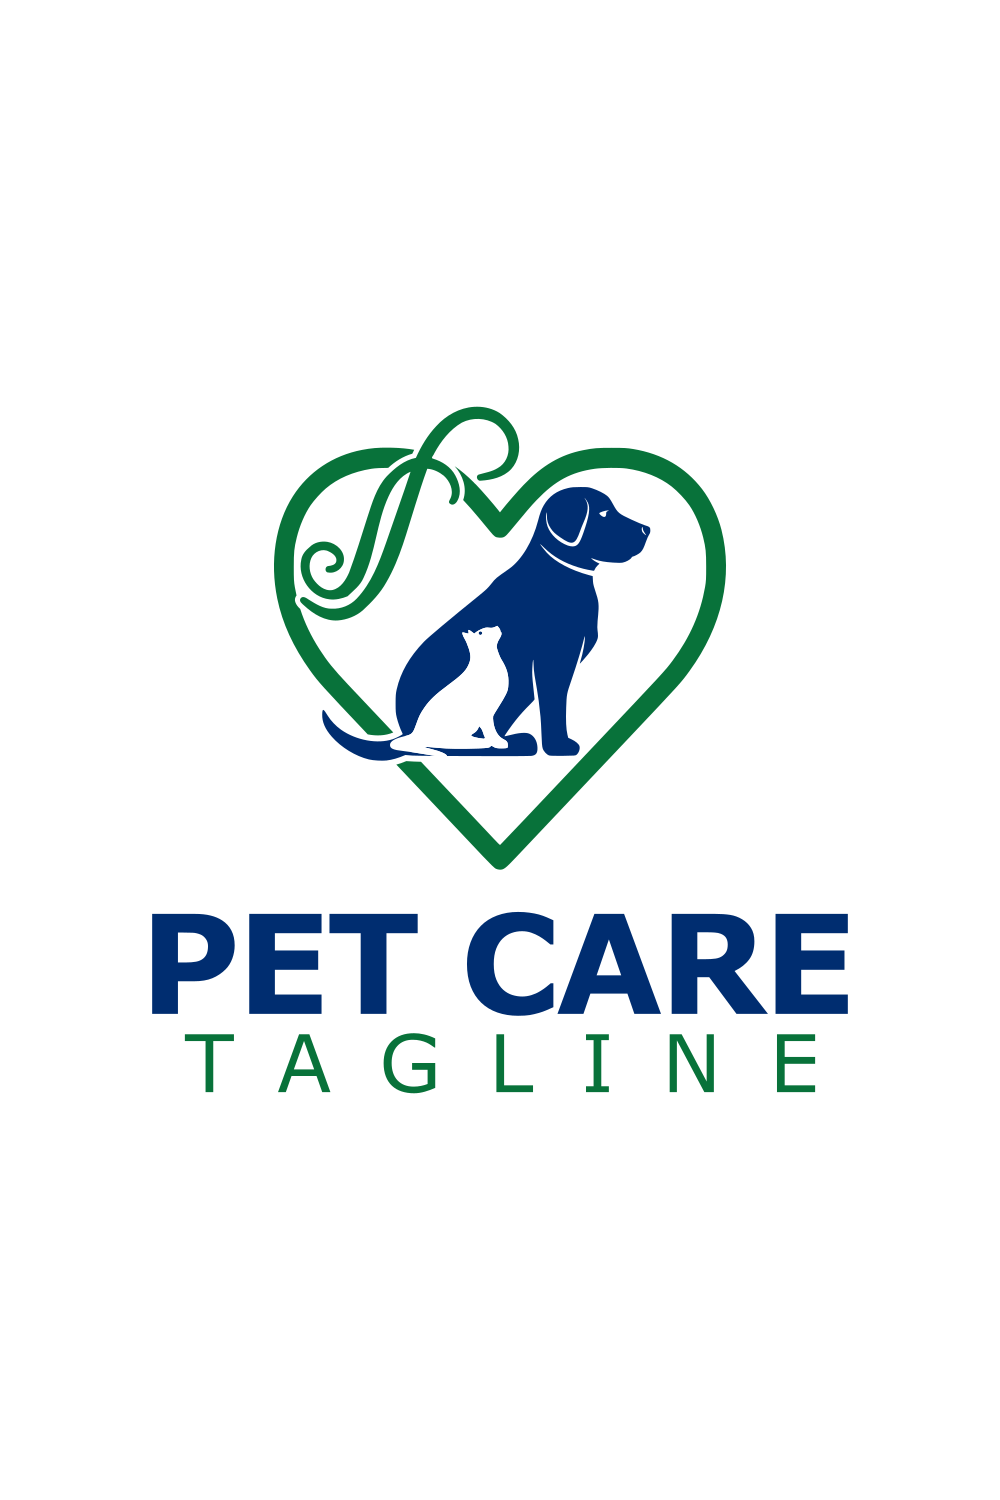 Pet Care Creative Logo Design Template pinterest image.